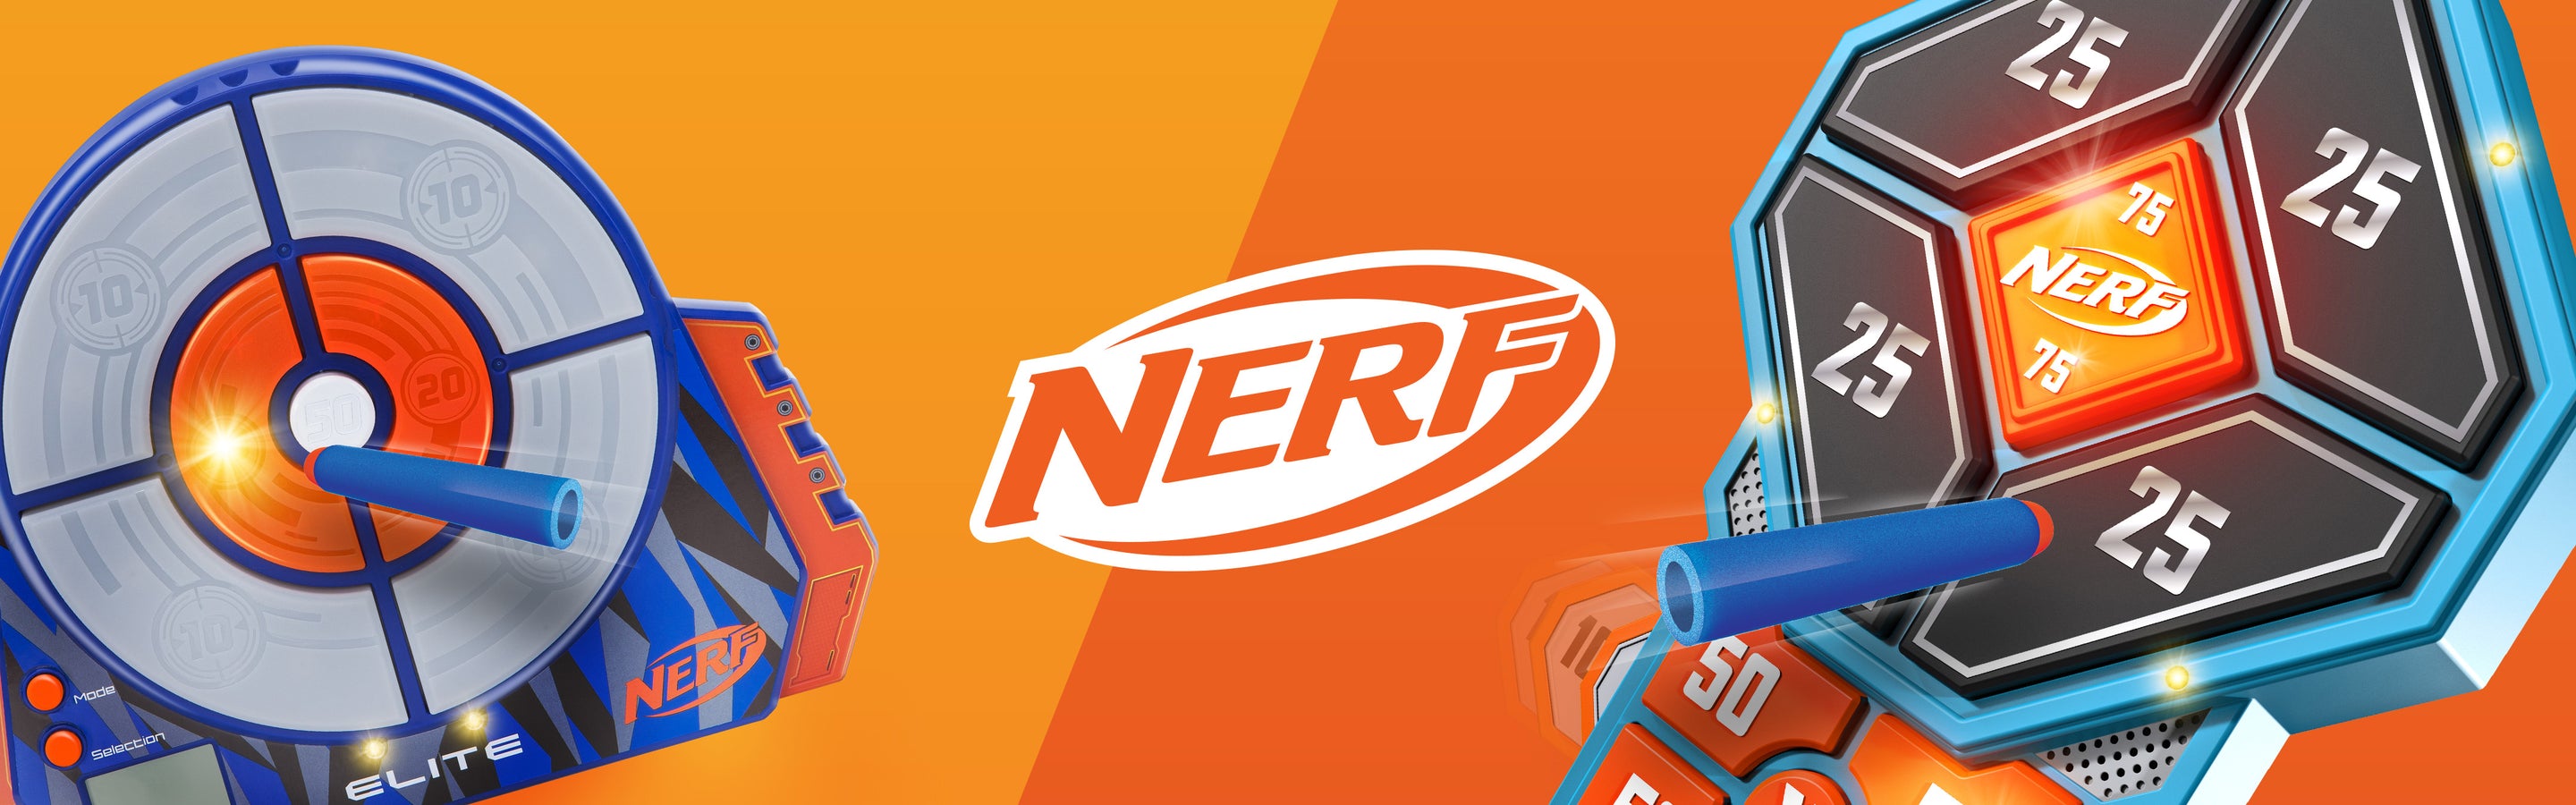 Nerf - hero image